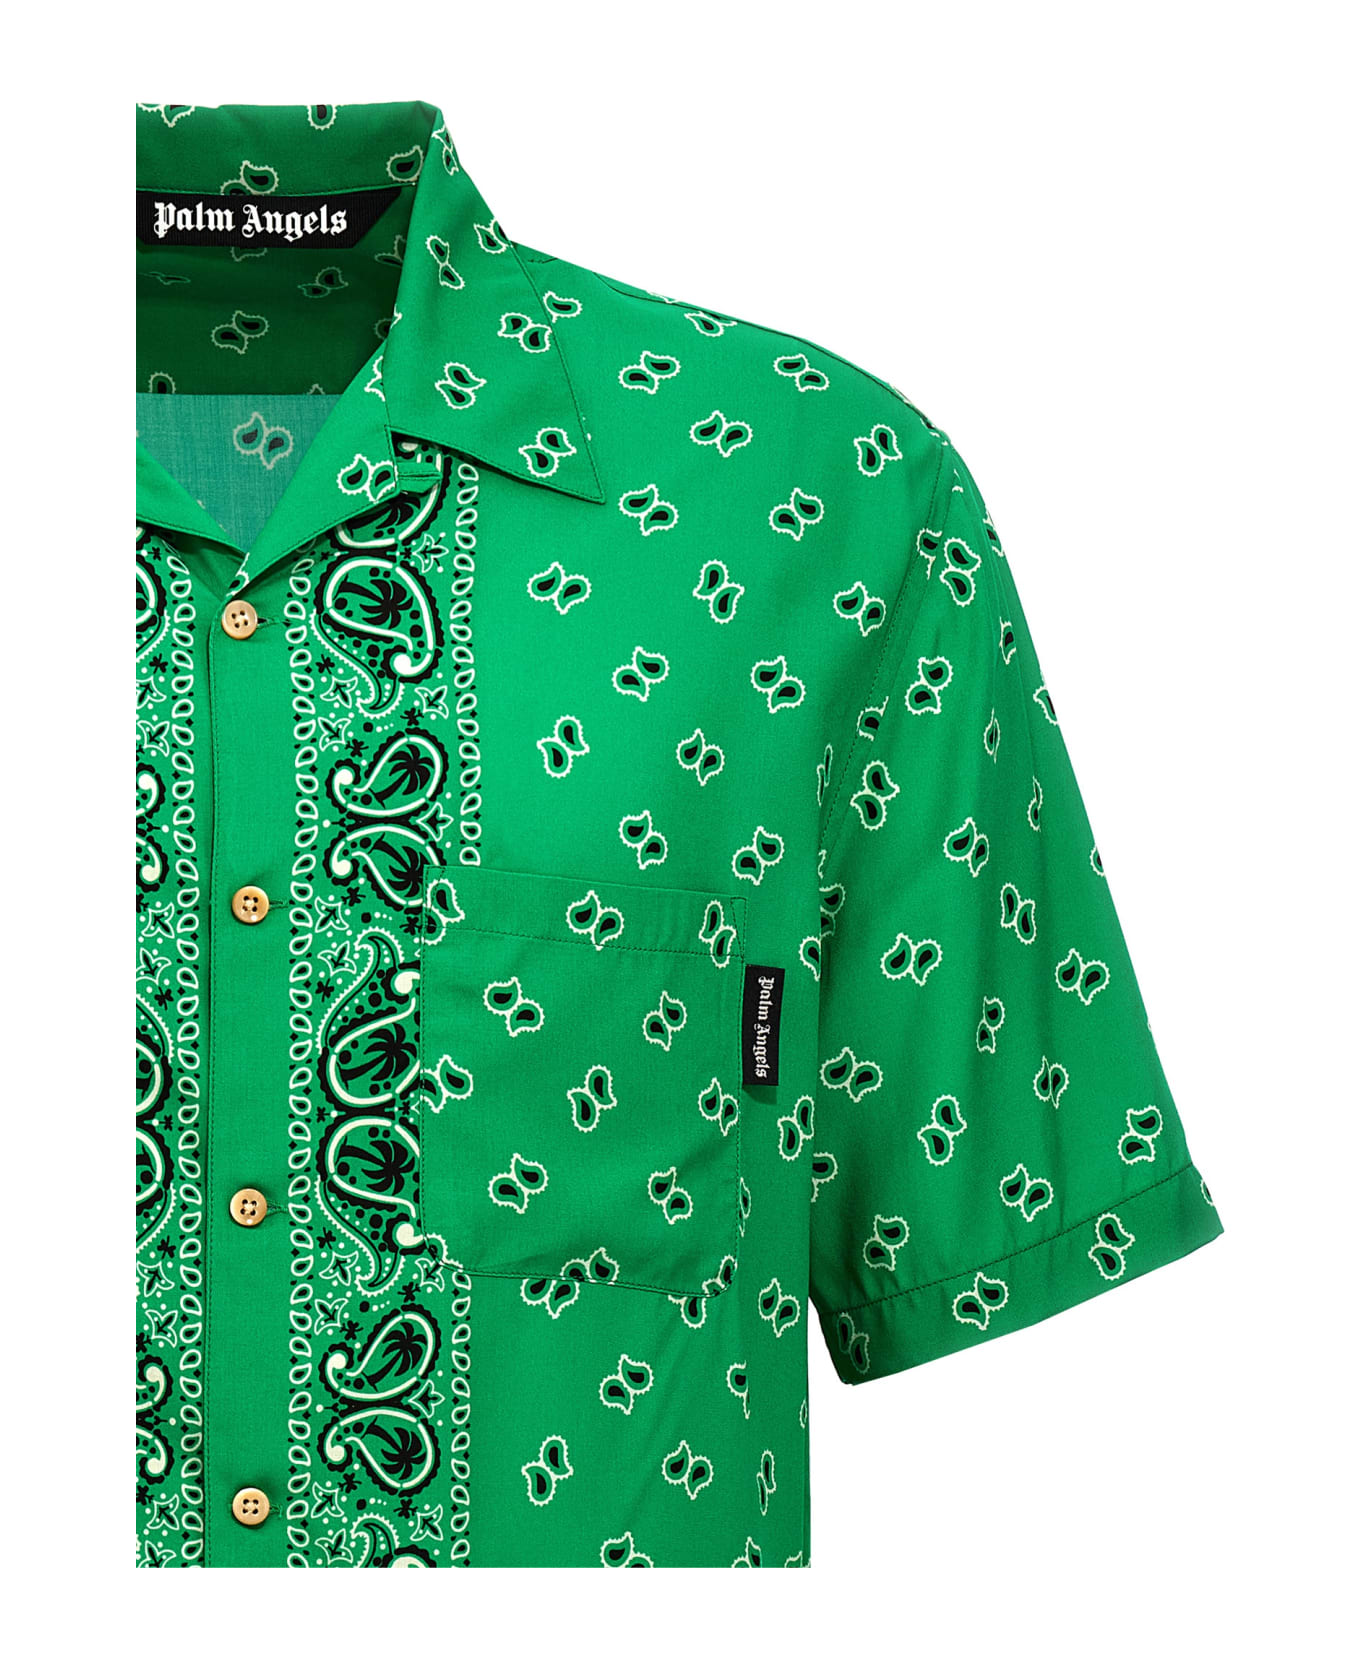 Palm Angels Paisley Printed Short-sleeved Shirt - Green green